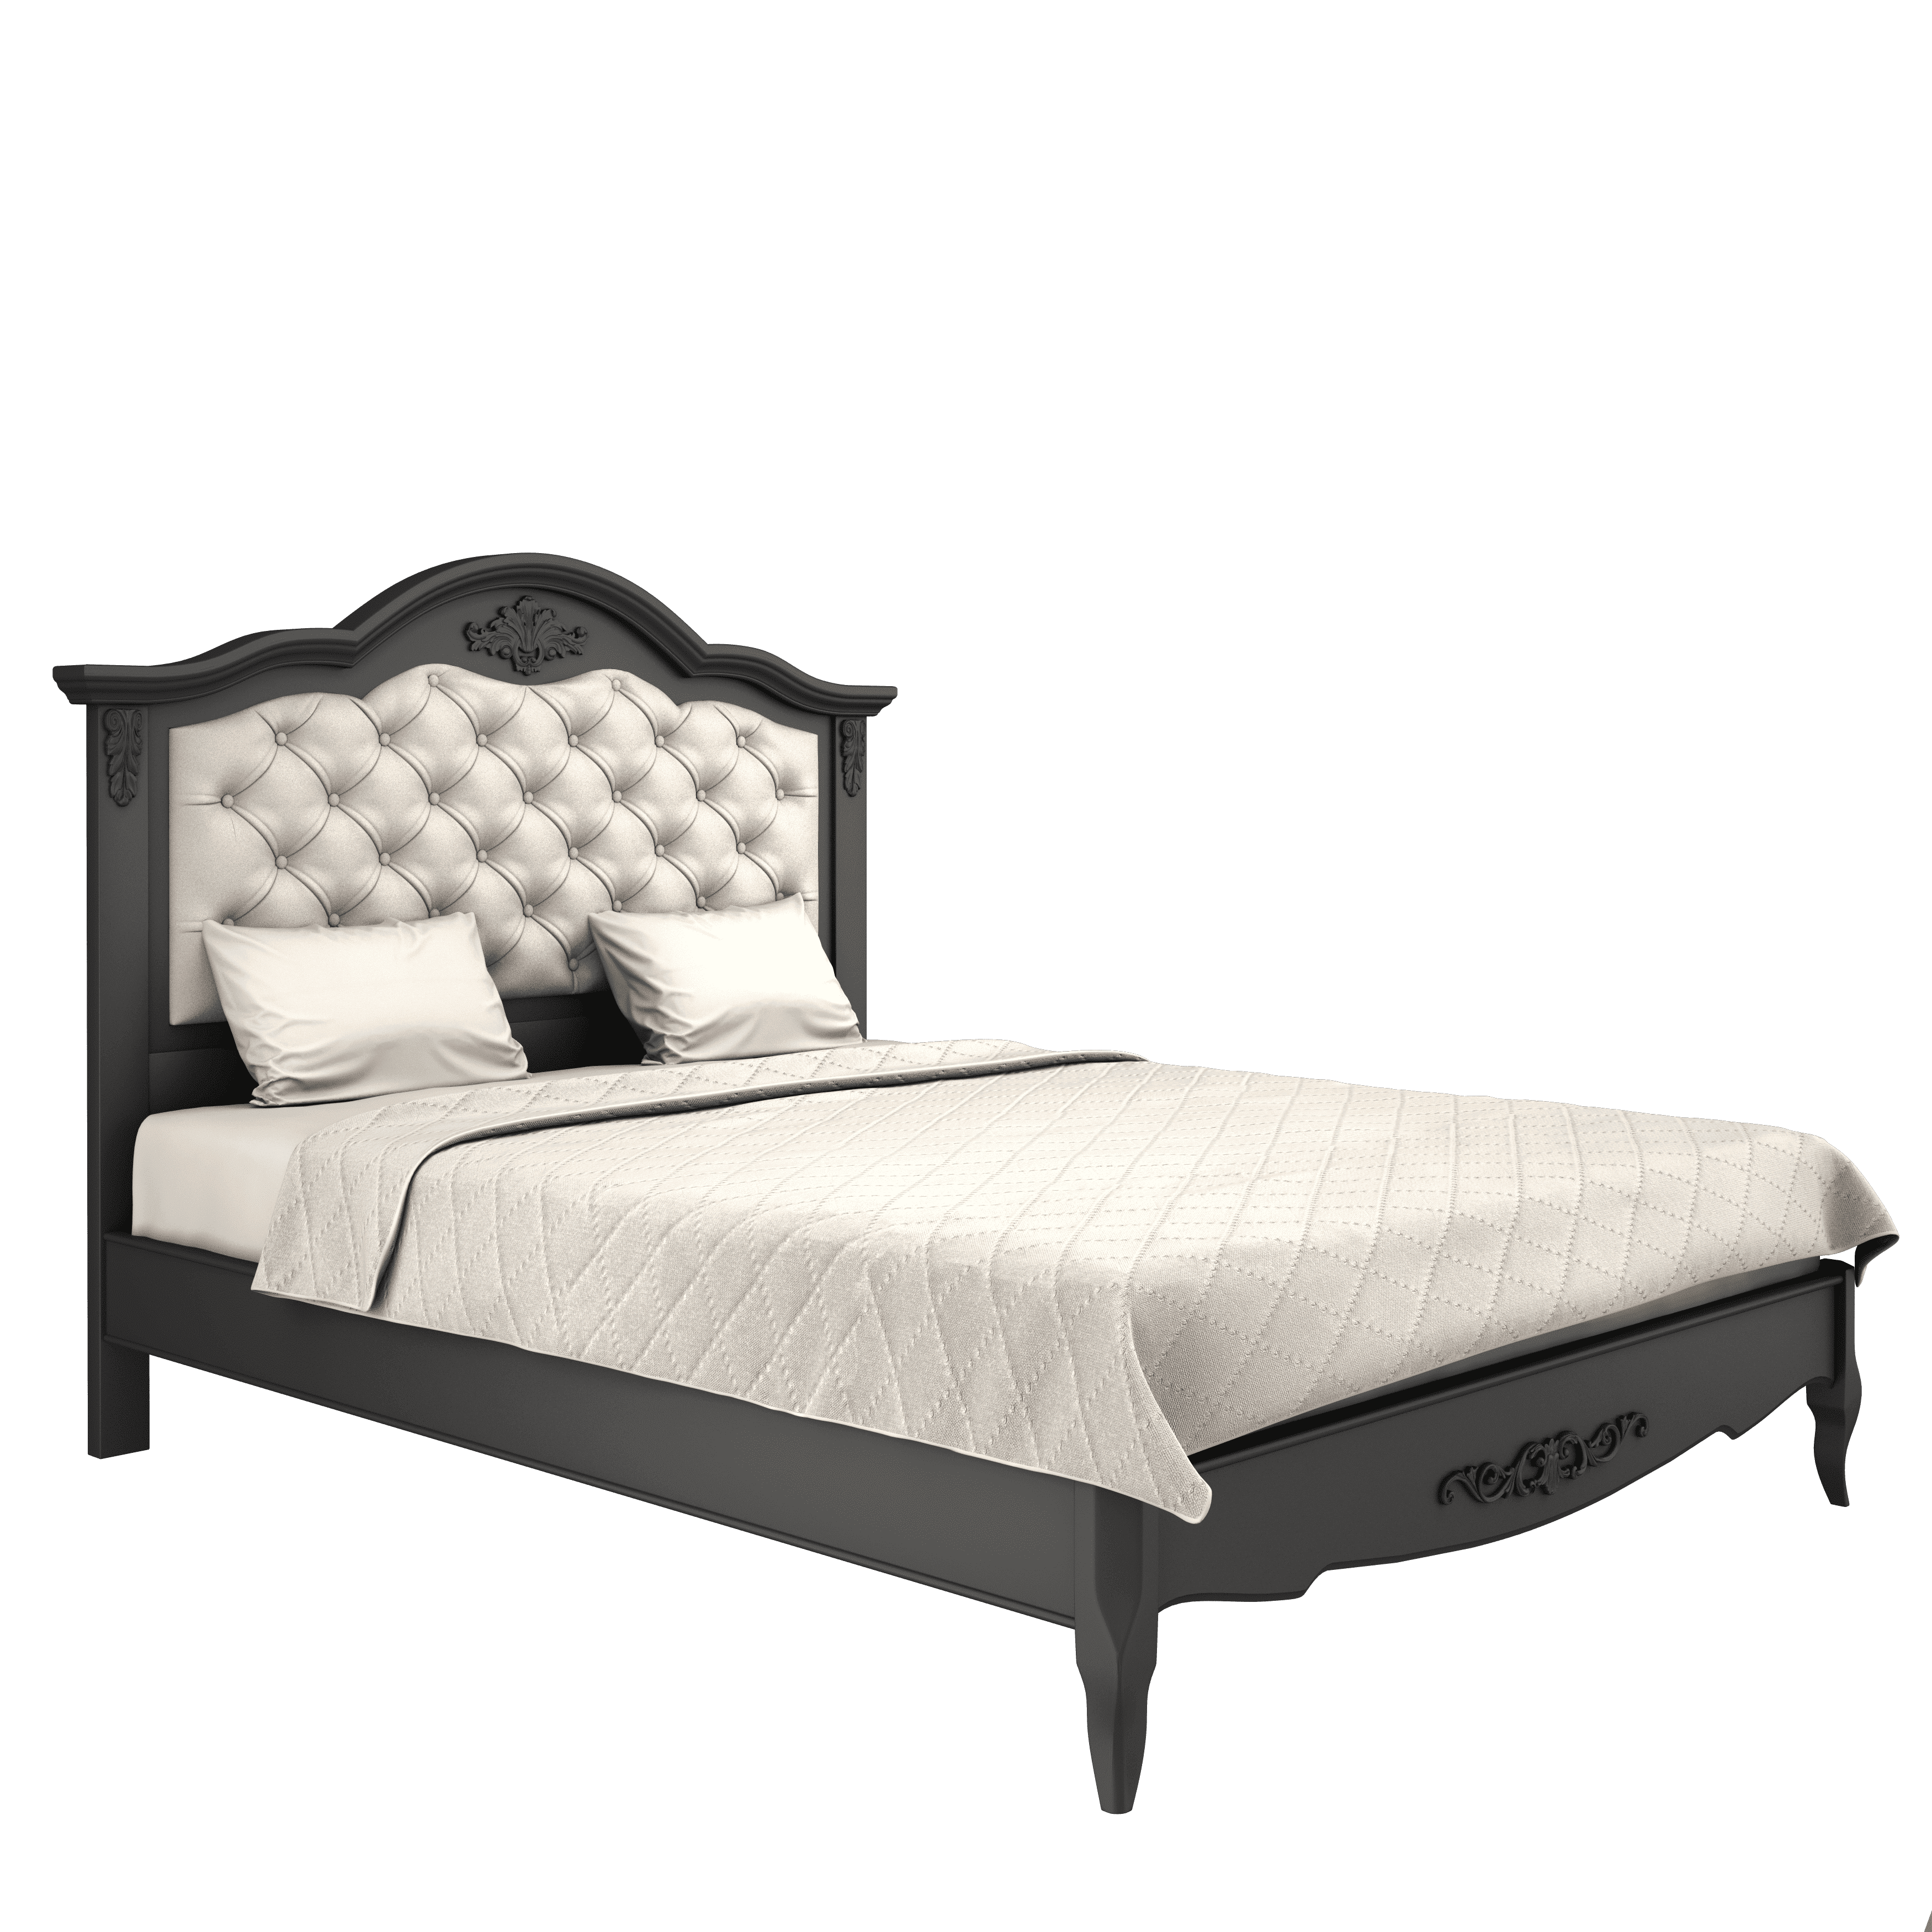 Кровать Aletan Provence, двуспальная, 160x200 см, цвет: черный (B216BL)B216BL